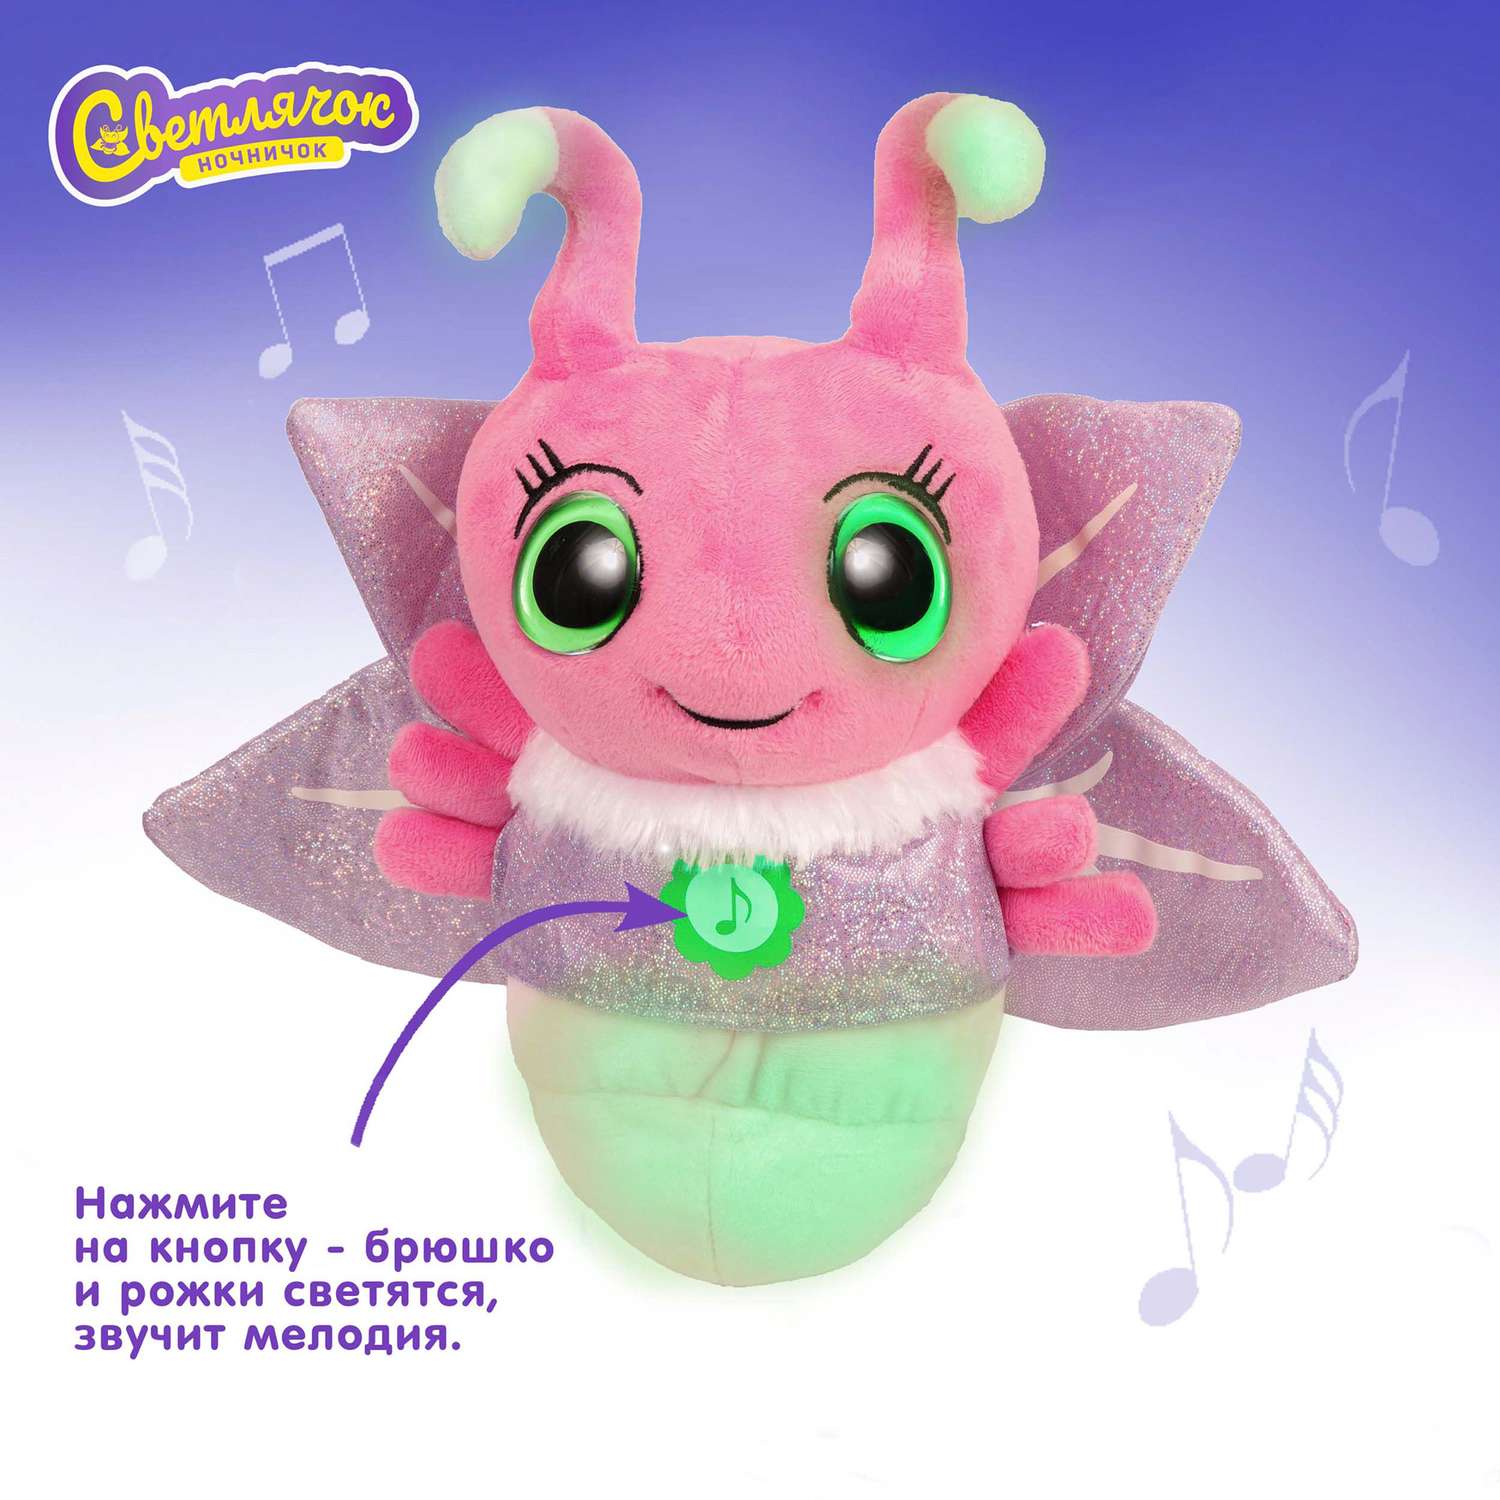 Игрушка интерактивная Светлячок ночничок музыкальная мягкая цвет розовый - фото 2